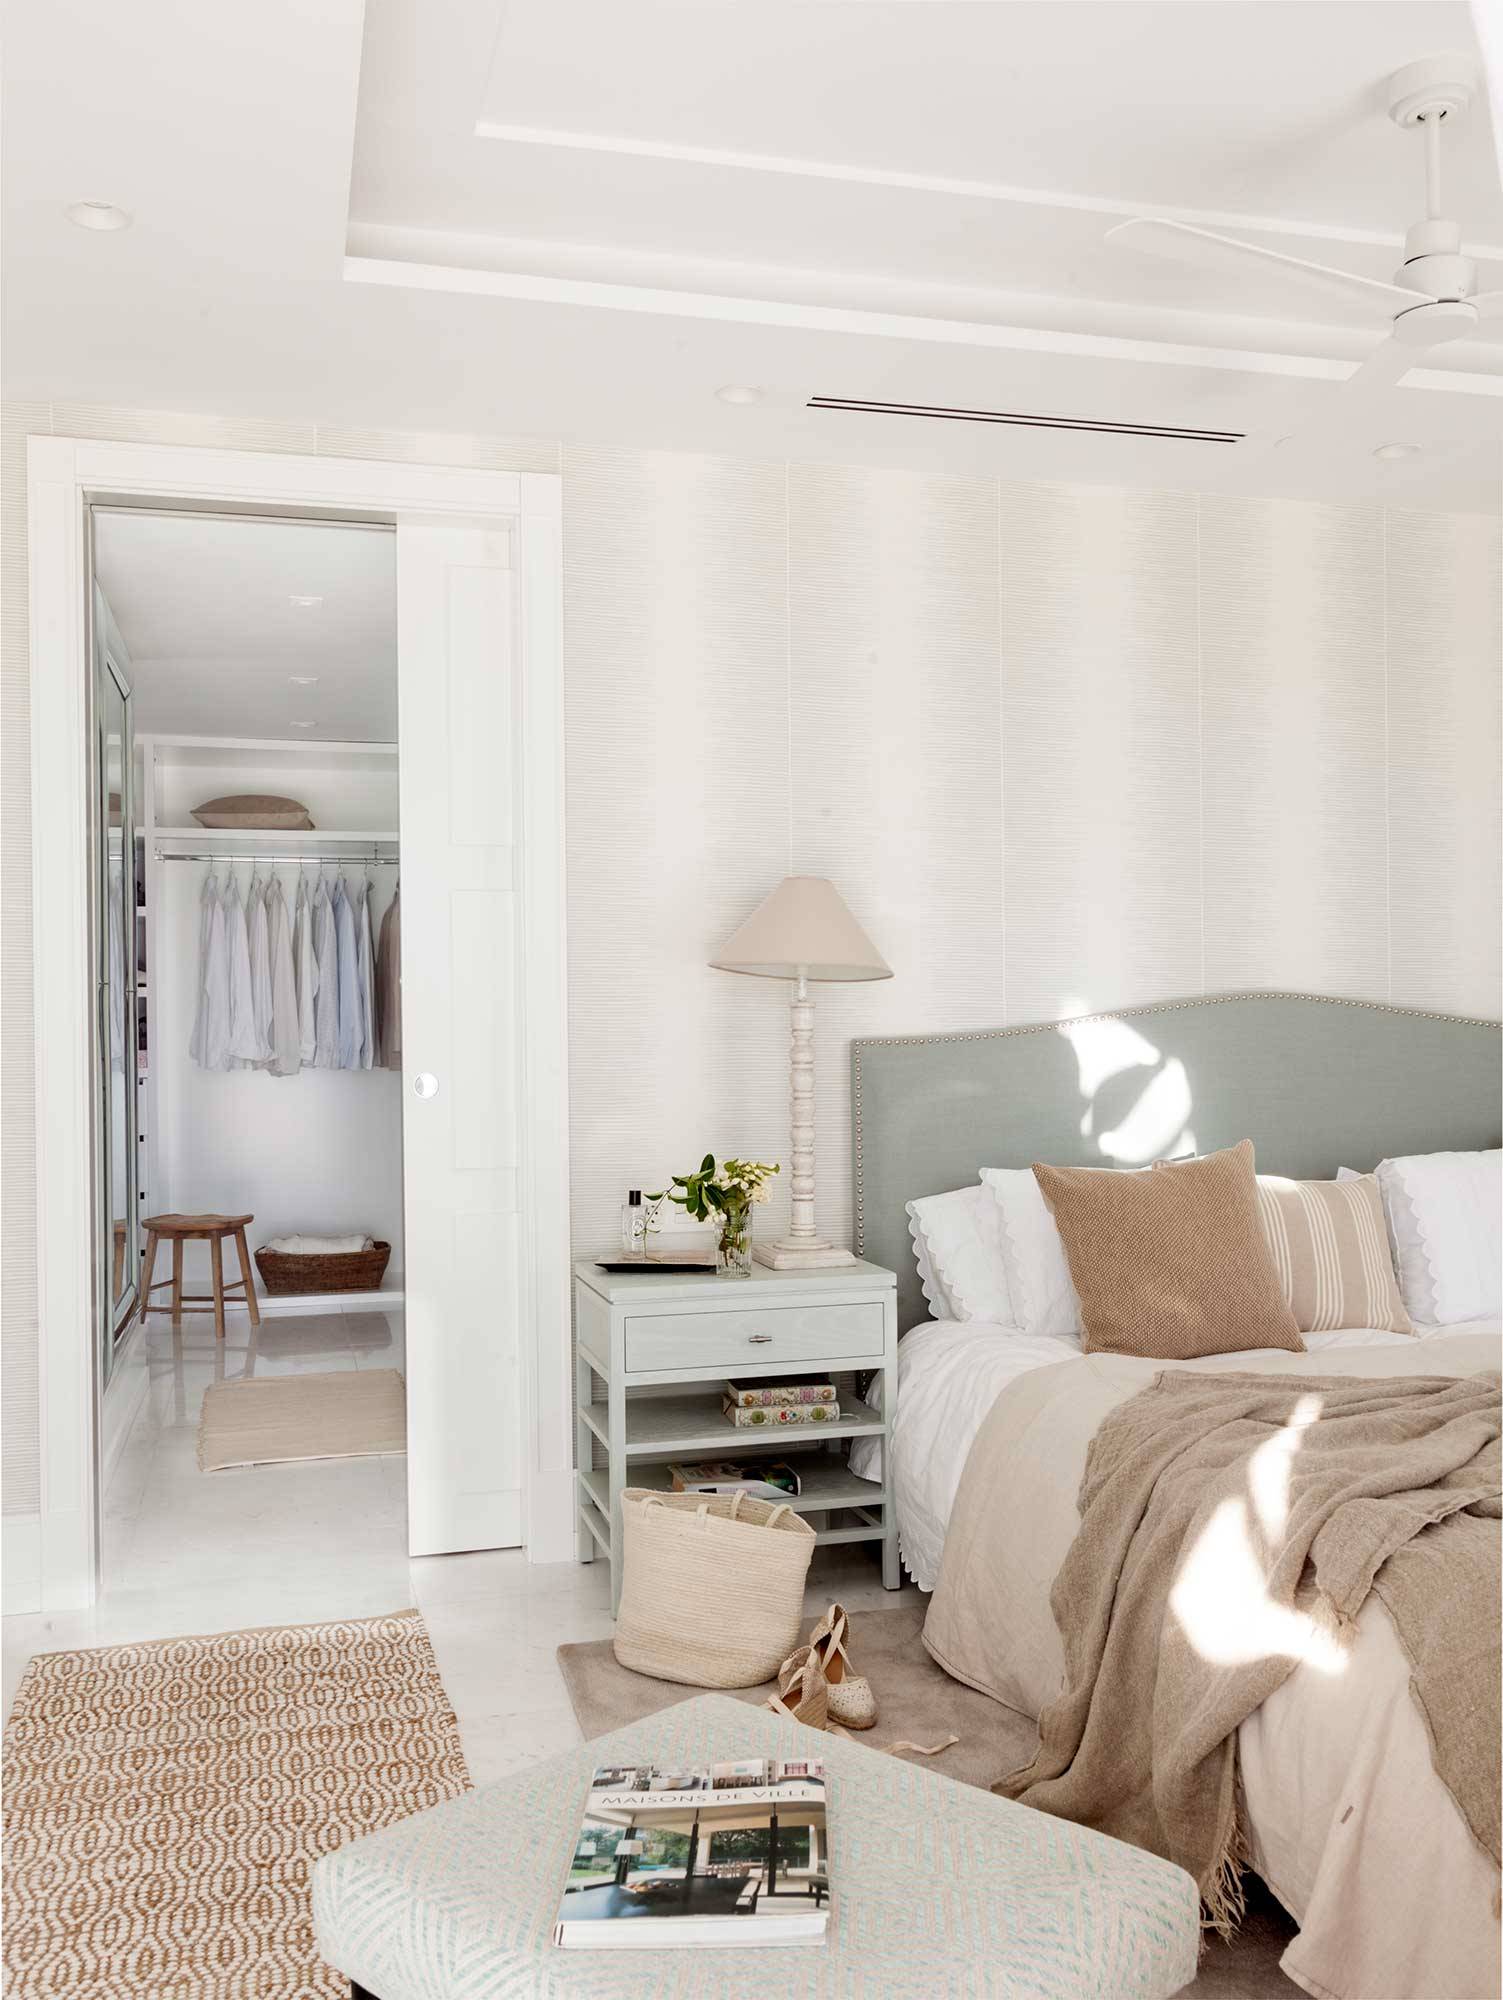 Dormitorio con pared del cabecero con papel a rayas y corredera que separa el vestidor_00527445 O